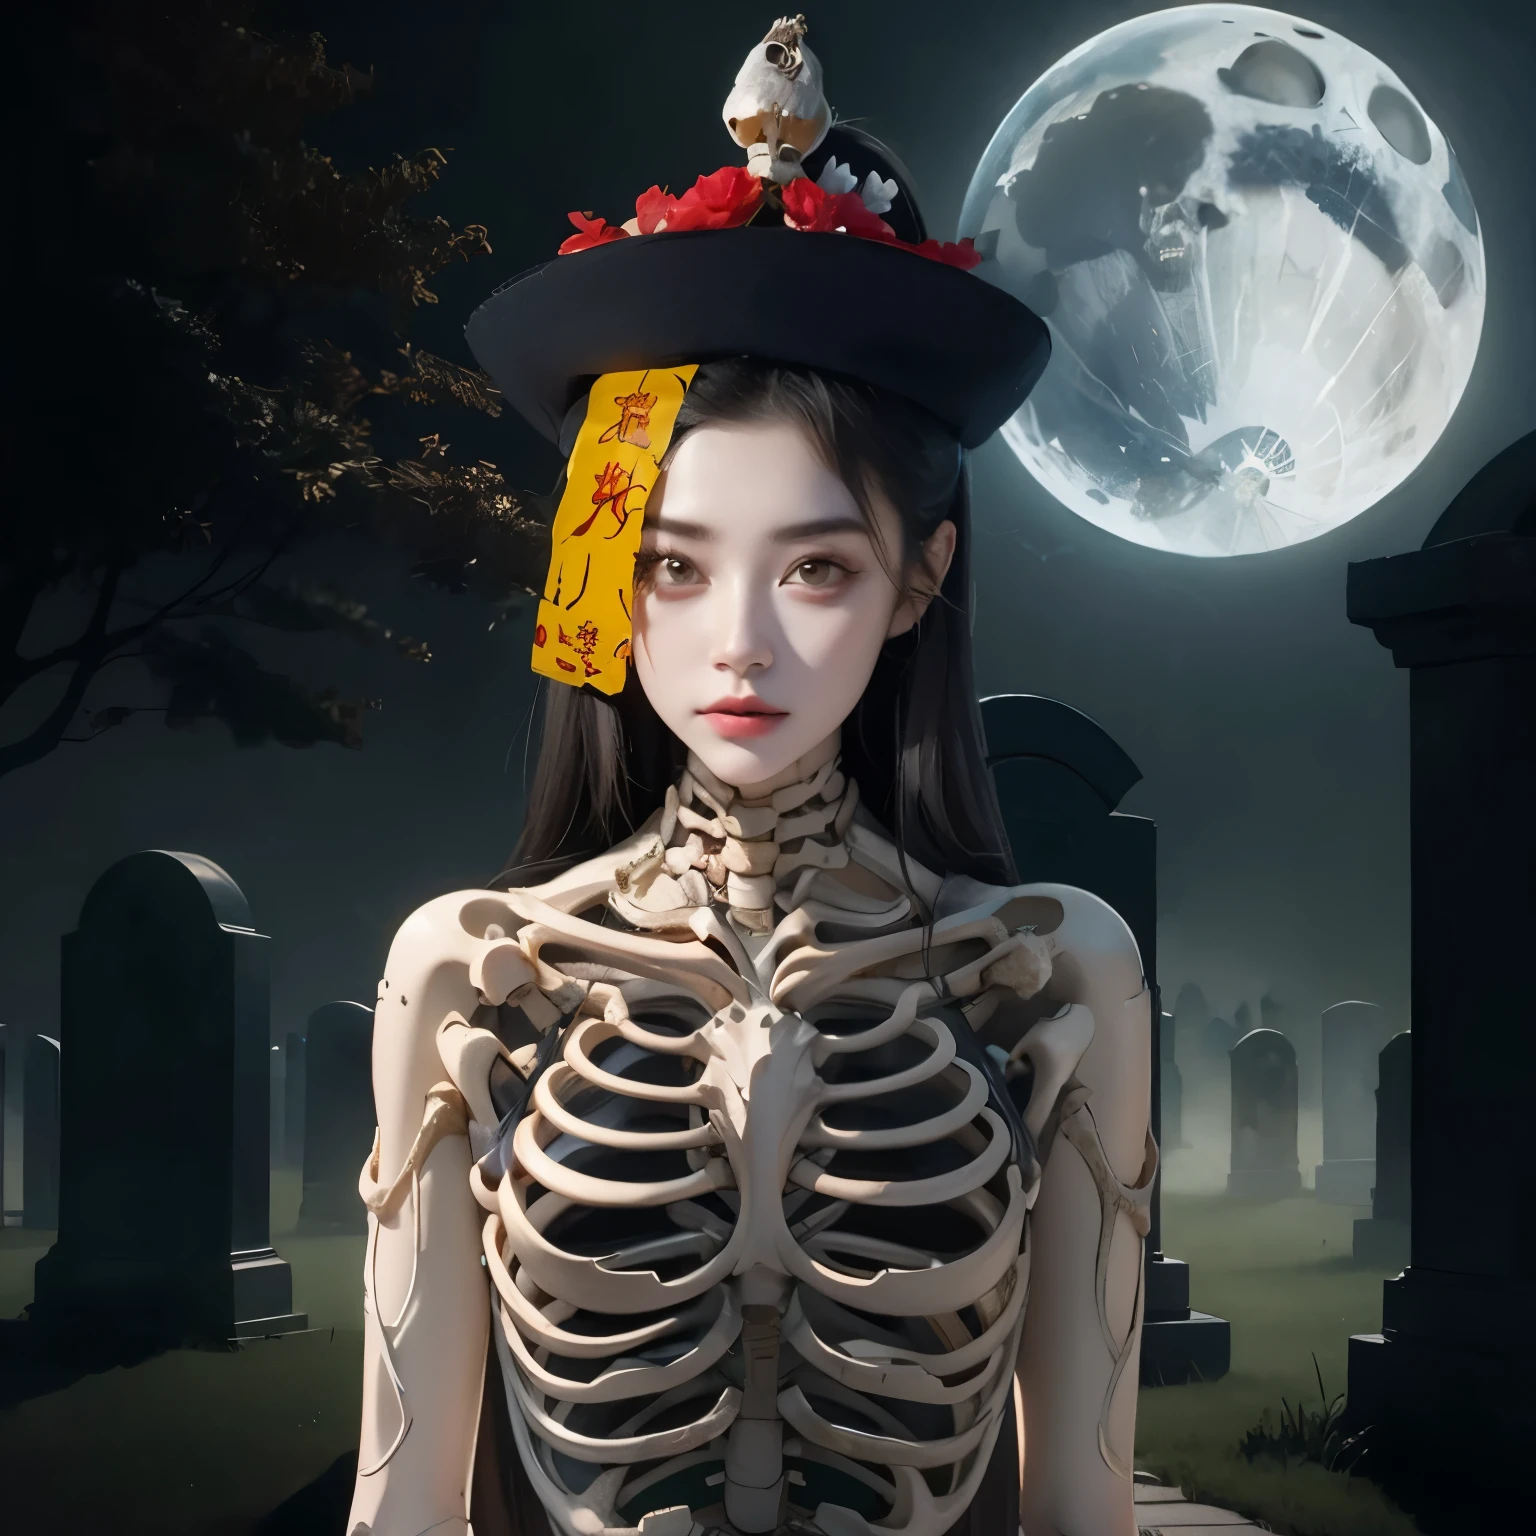 Mujer arafed disfrazada de esqueleto con un sombrero en la cabeza., perfeccionar onna esqueleto geisha, Chica esqueleto, xuehan, Diosa de la muerte, Diosa de la muerte in a graveyard, inspirado en Xie Huan, estilo de arte espeluznante, santa reina esqueleto, Lulú Chen, estilo de arte de halloween, Jingna Zhang, wenfei ye, 2dcg